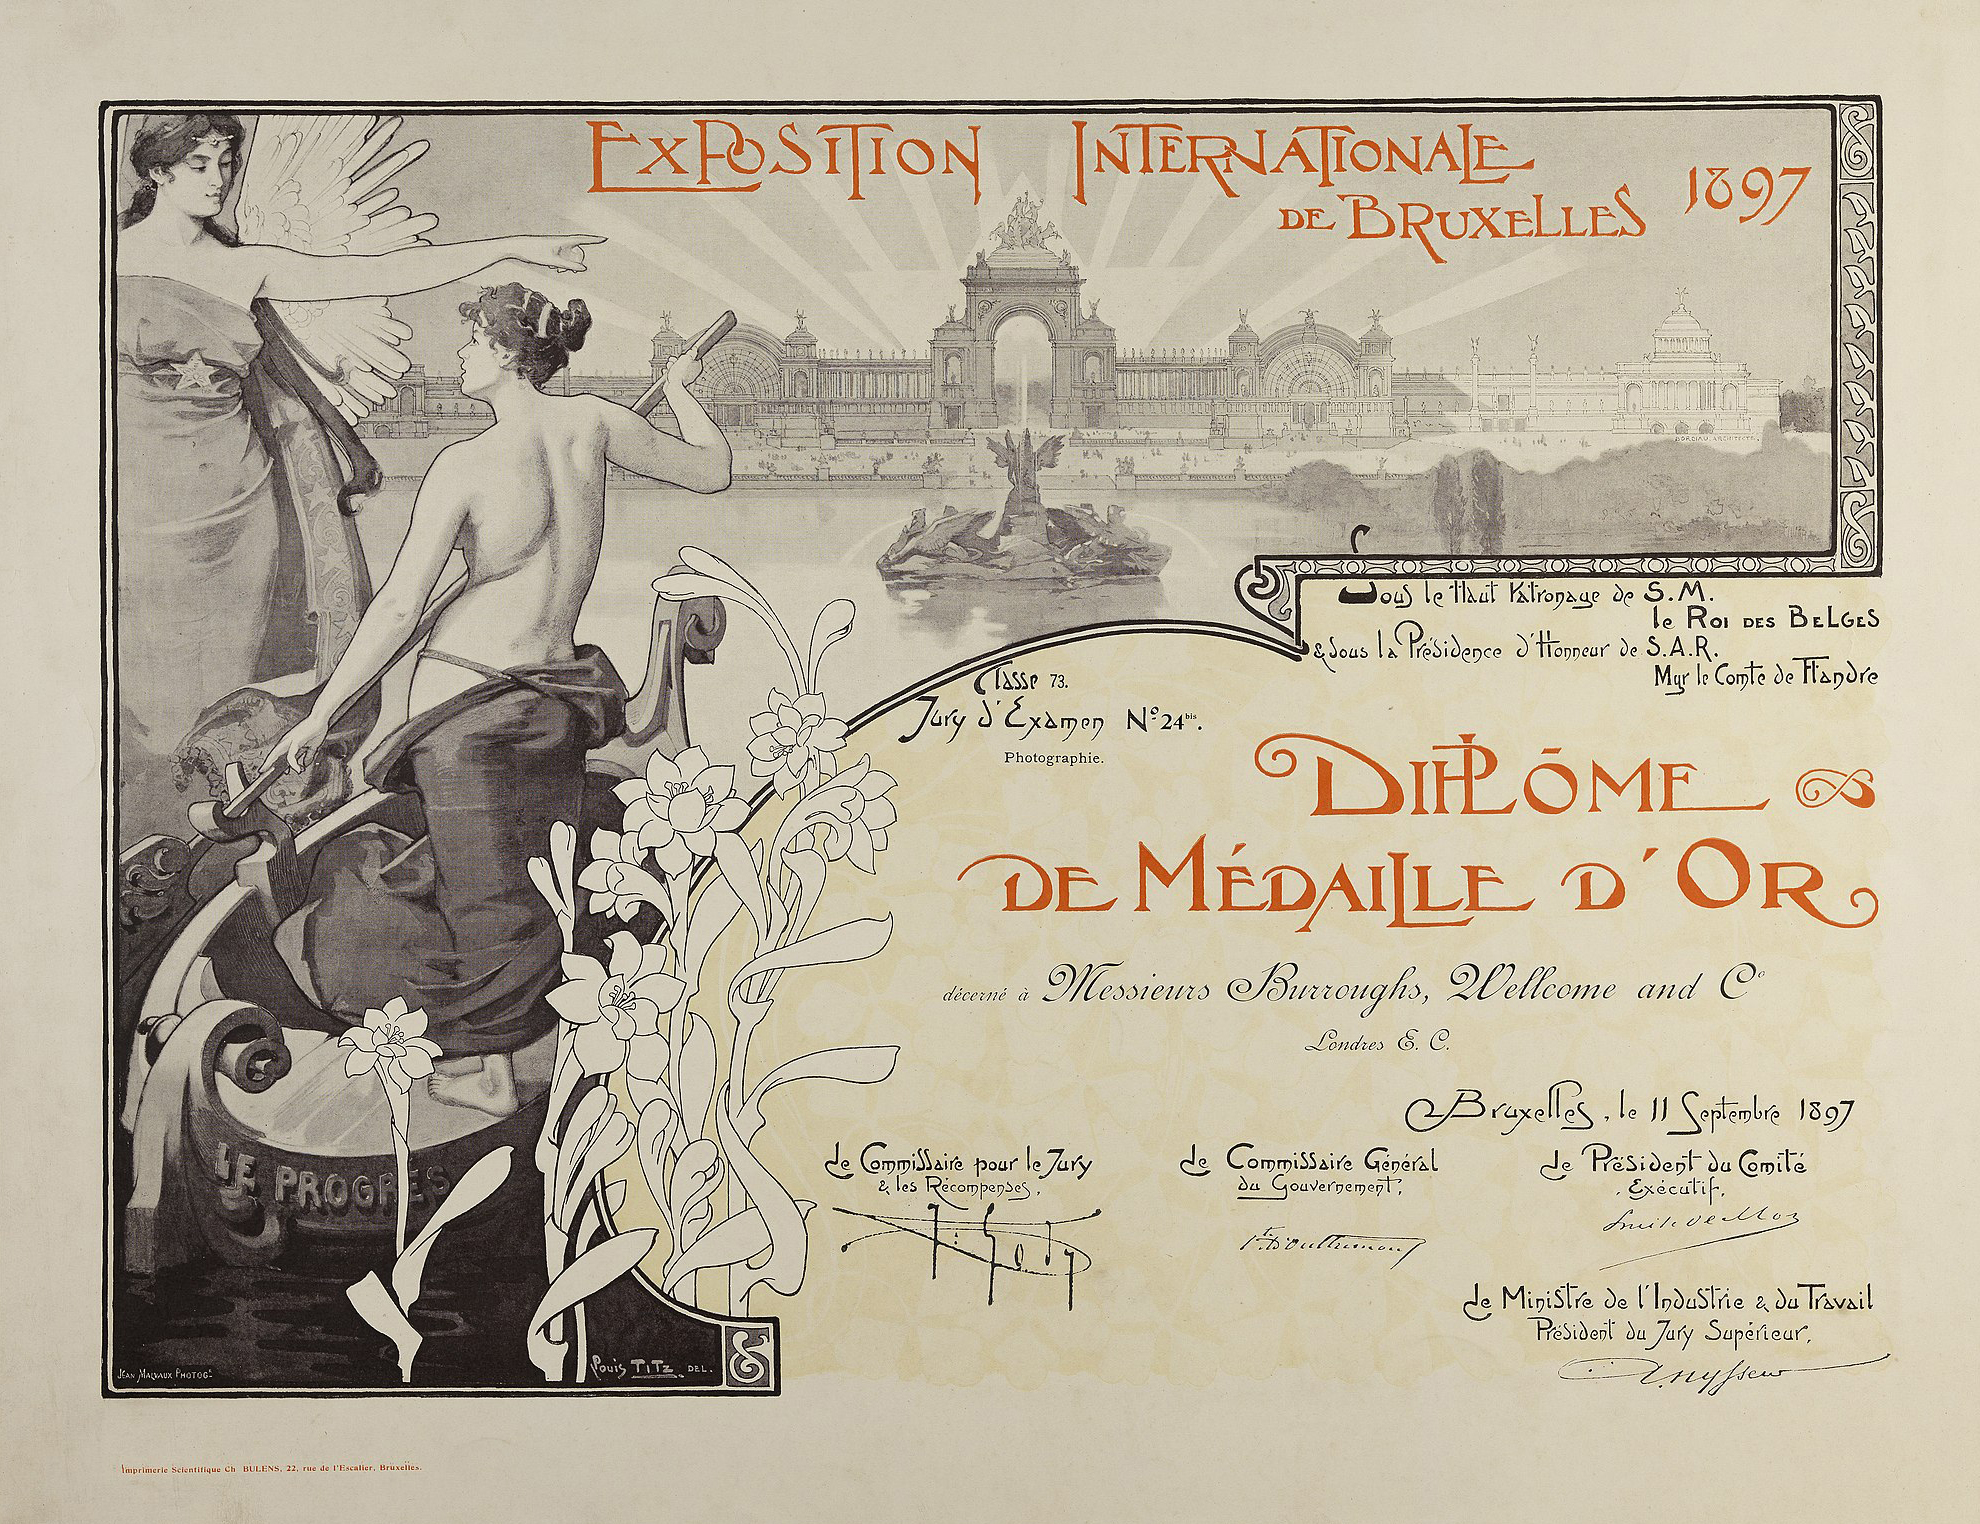 Всемирная выставка 1897г. года Брюссель (Exposition Internationale de Bruxelles)